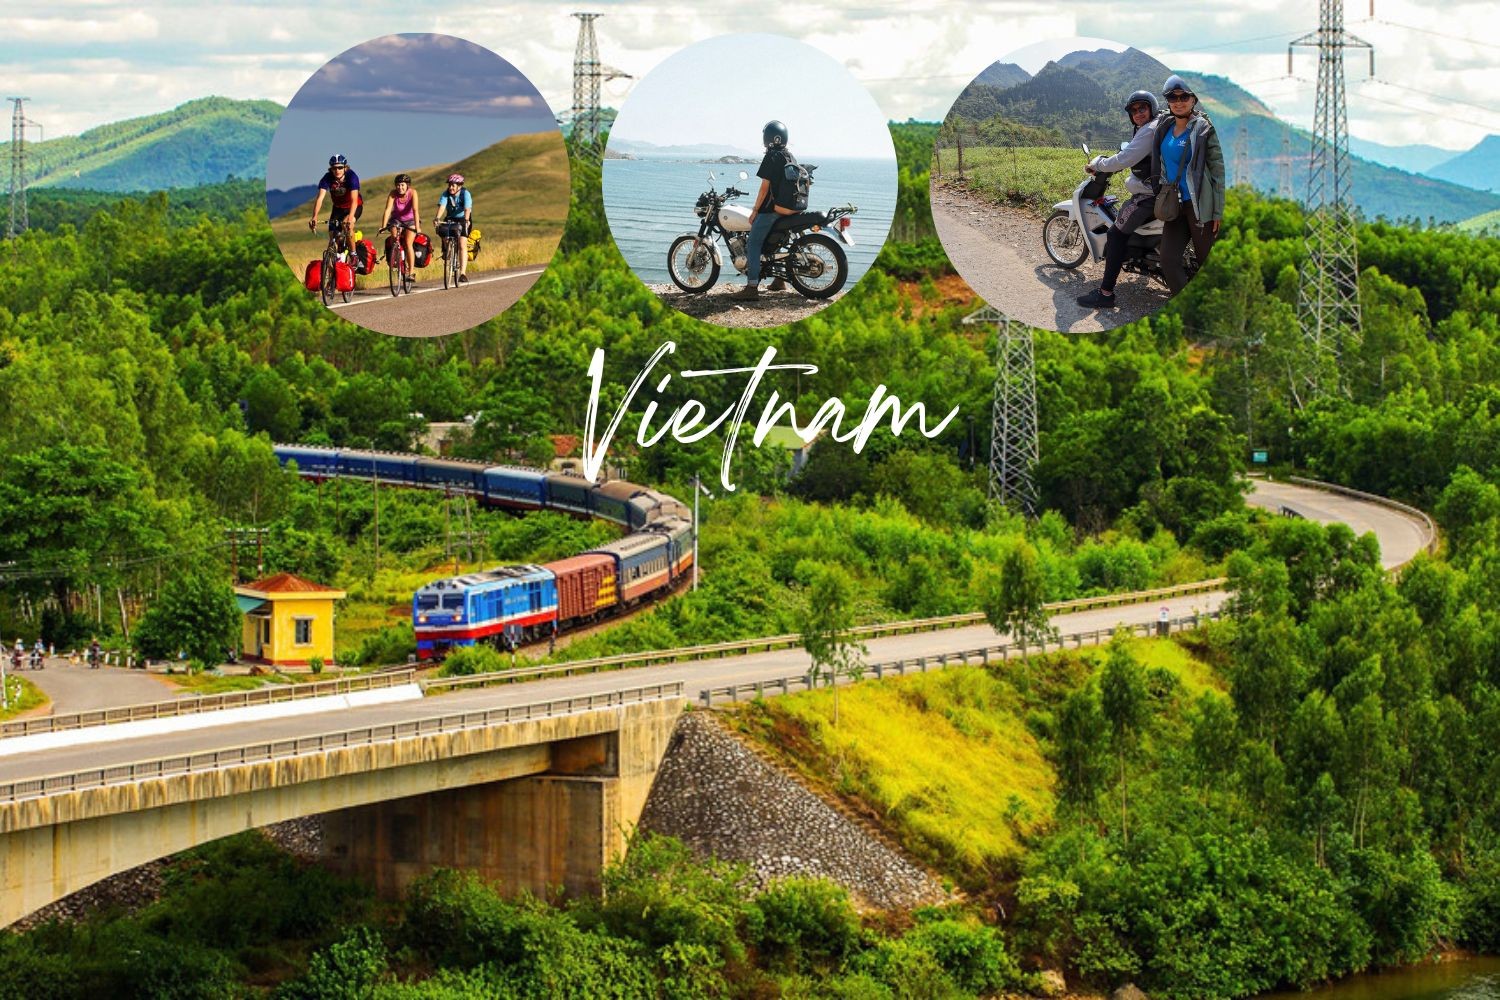 Lonely Planet đánh giá du lịch Việt Nam là một điểm đến thuận lợi